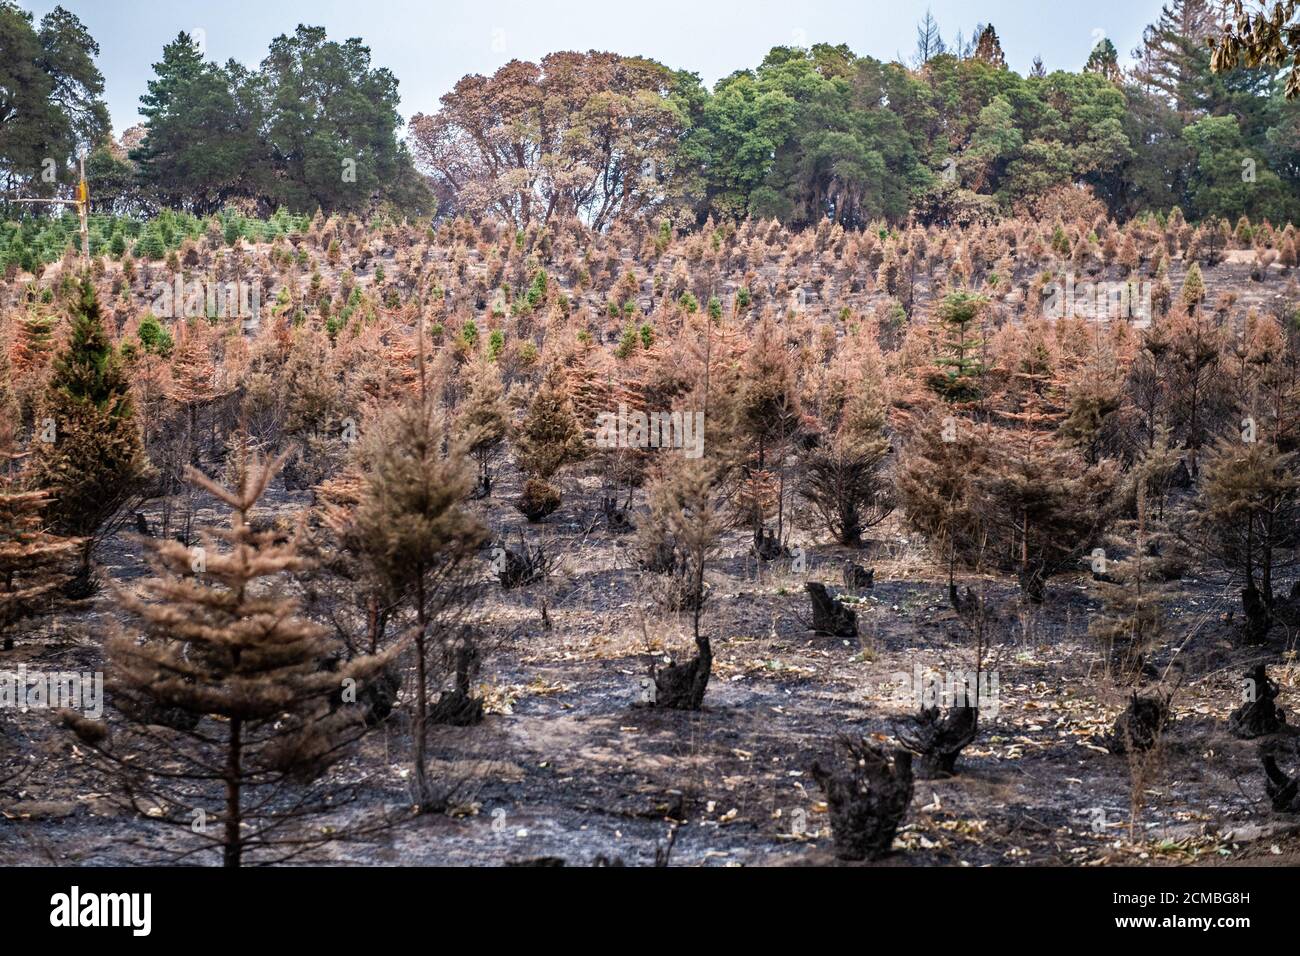 SANTA CRUZ, CALIFORNIE - SEPTEMBRE 16 : vue générale des arbres brûlés sur la pente Empire après le feu du complexe CZU Lightning à travers des parties de Felton dans le comté de Santa Cruz, Californie, États-Unis, le jeudi 20 août 2020. Depuis le début de l'année, les feux de forêt ont brûlé plus de 3.2 millions d'acres en Californie. Depuis août 15, lorsque l'activité d'incendie de la Californie s'est élevée, il y a eu 25 morts et plus de 4,200 structures détruites. Photo : Chris Tuite/ImageSPACE/MediaPunch Banque D'Images